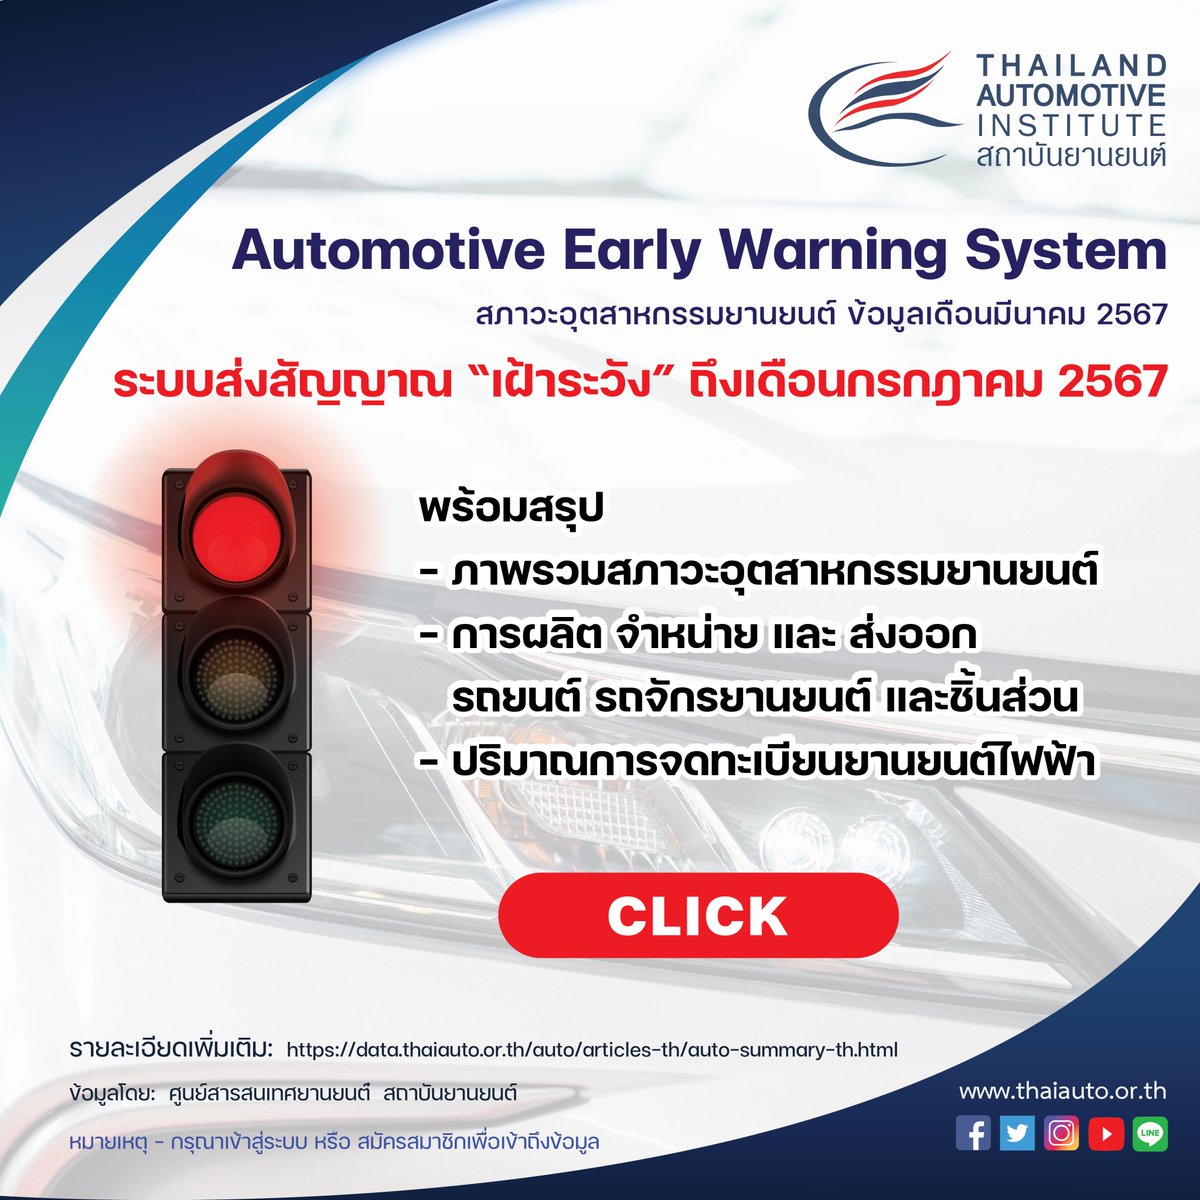 ศูนย์สารสนเทศยานยนต์ สถาบันยานยนต์
อัพเดตข้อมูลสภาวะอุตสาหกรรมยานยนต์ รายเดือนเมษายน 2567

คลิก เพื่อศึกษารายละเอียดเพิ่มเติม
data.thaiauto.or.th/auto/articles-…